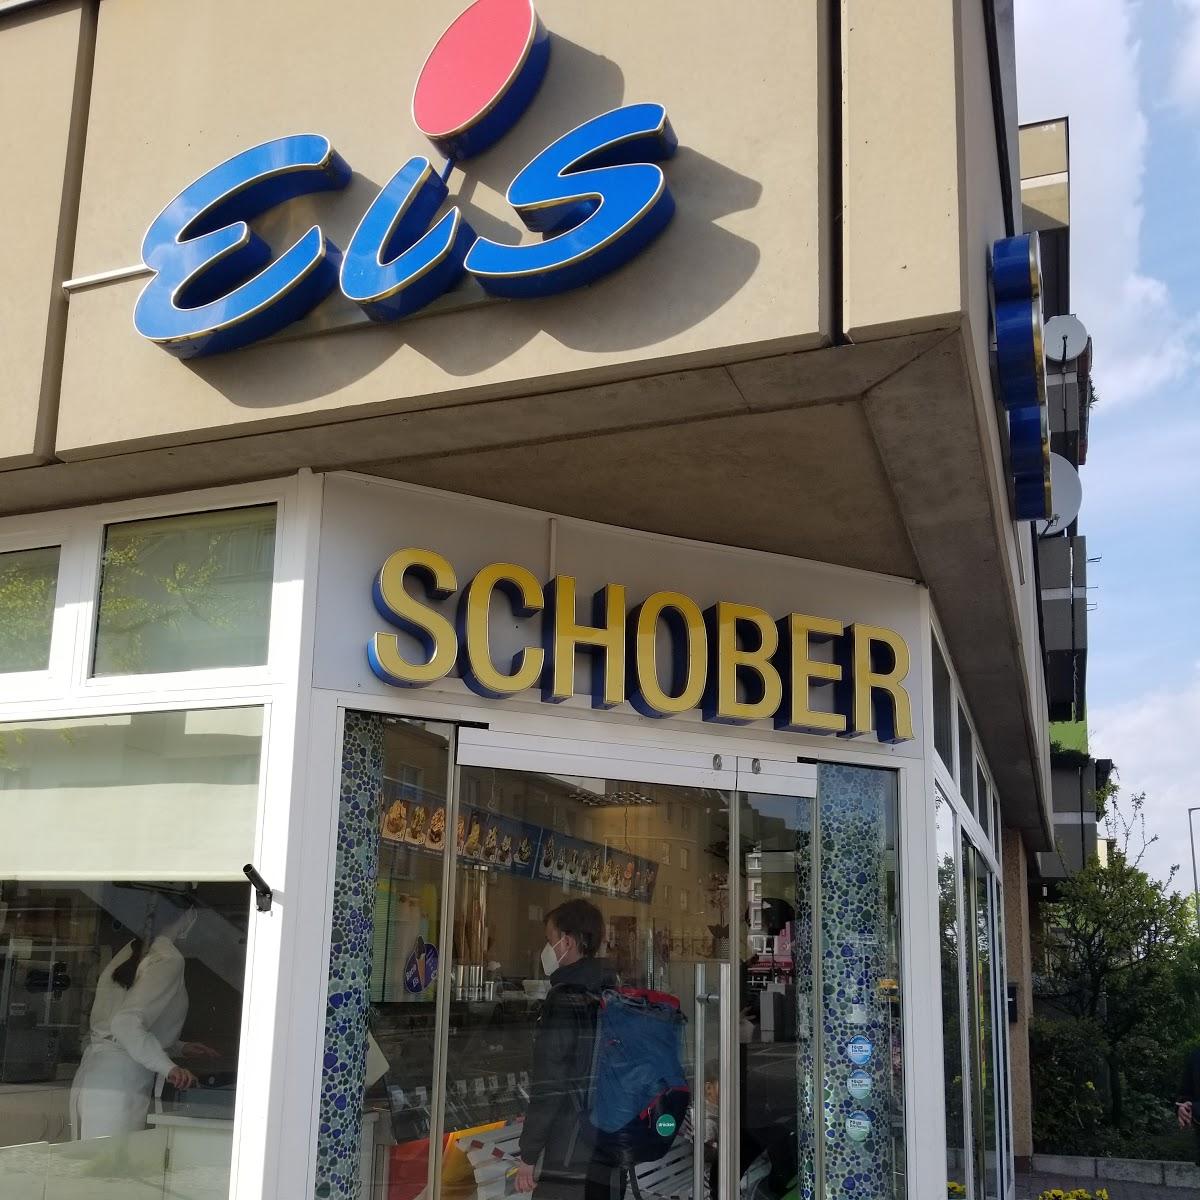 Restaurant "Eis Schober" in Berlin